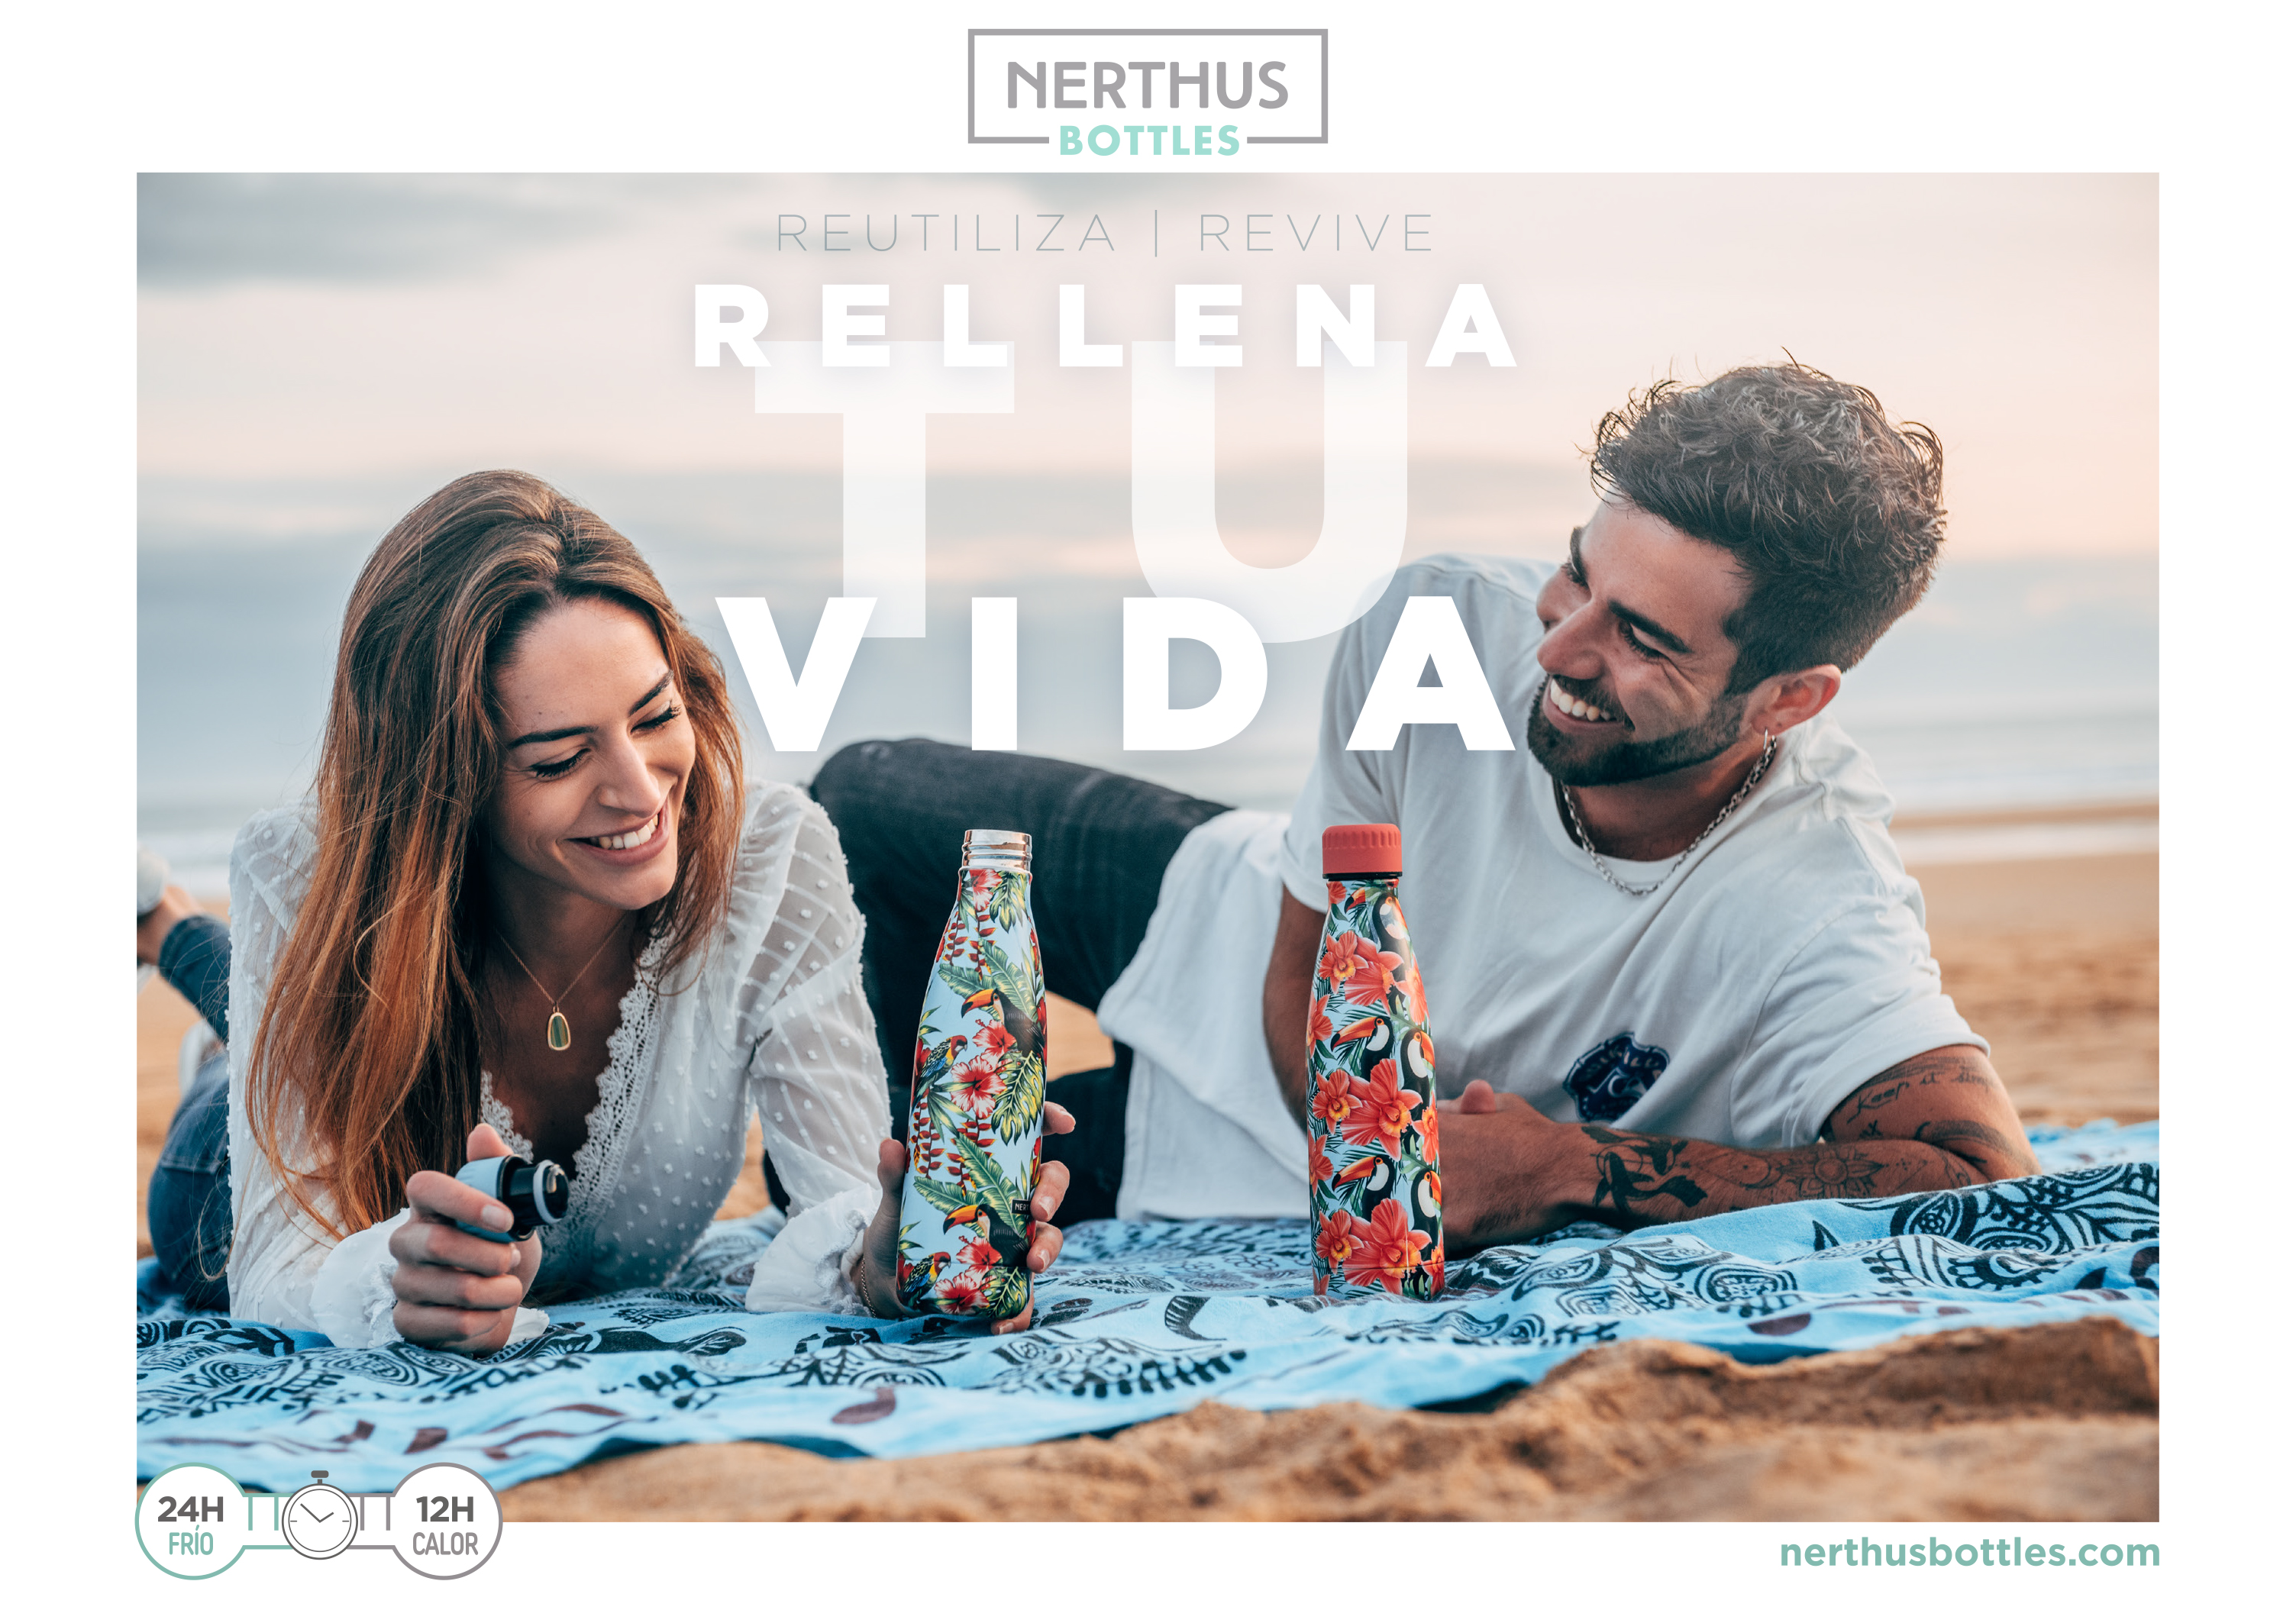 Enjoy life with Nerthus Bottles, reusable bottles